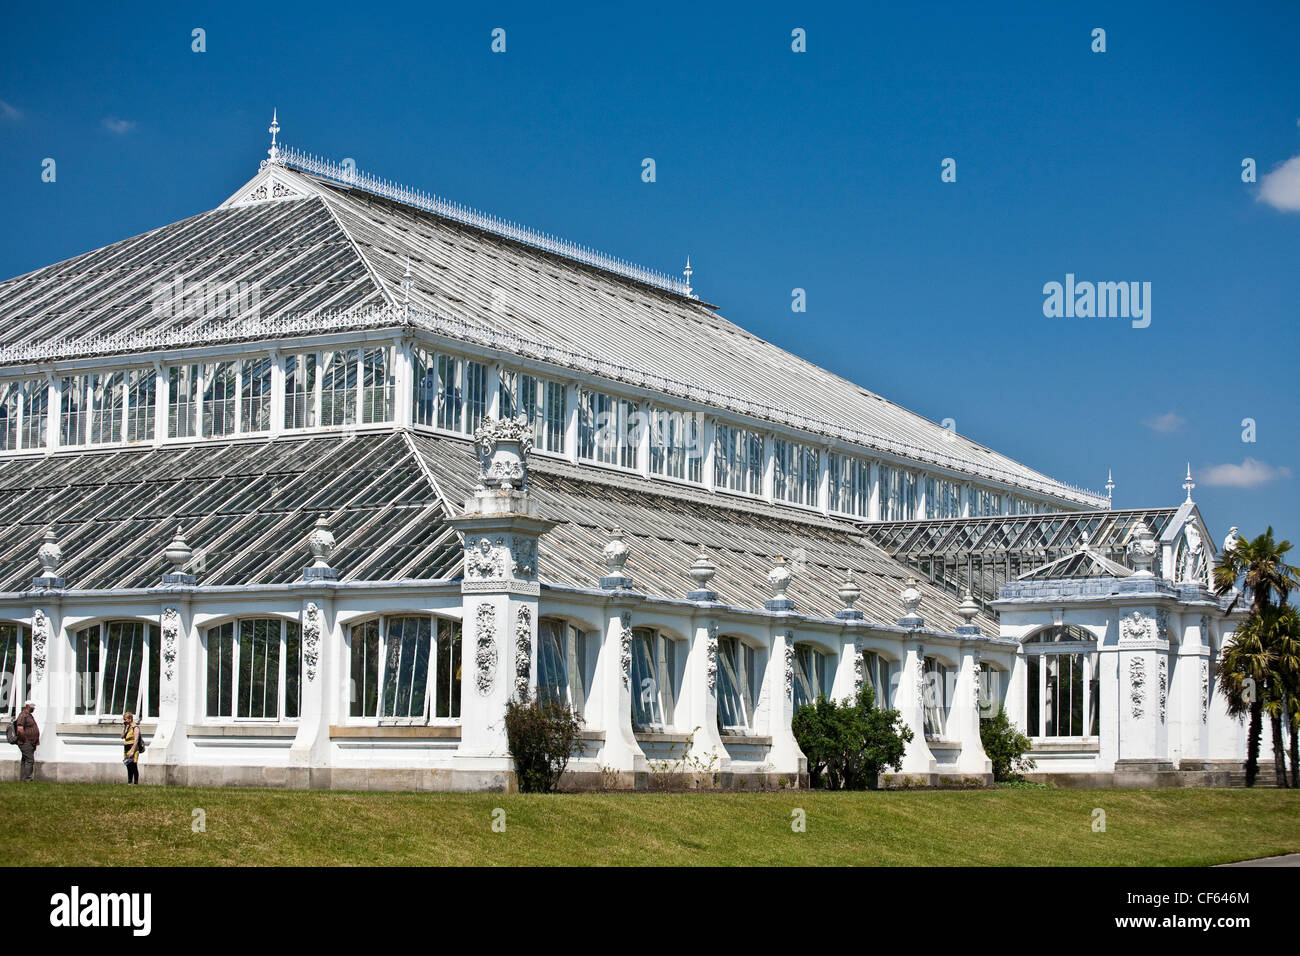 La Chambre des régions tempérées, la plus grande serre victorienne dans le monde aux Jardins botaniques royaux de Kew. Banque D'Images